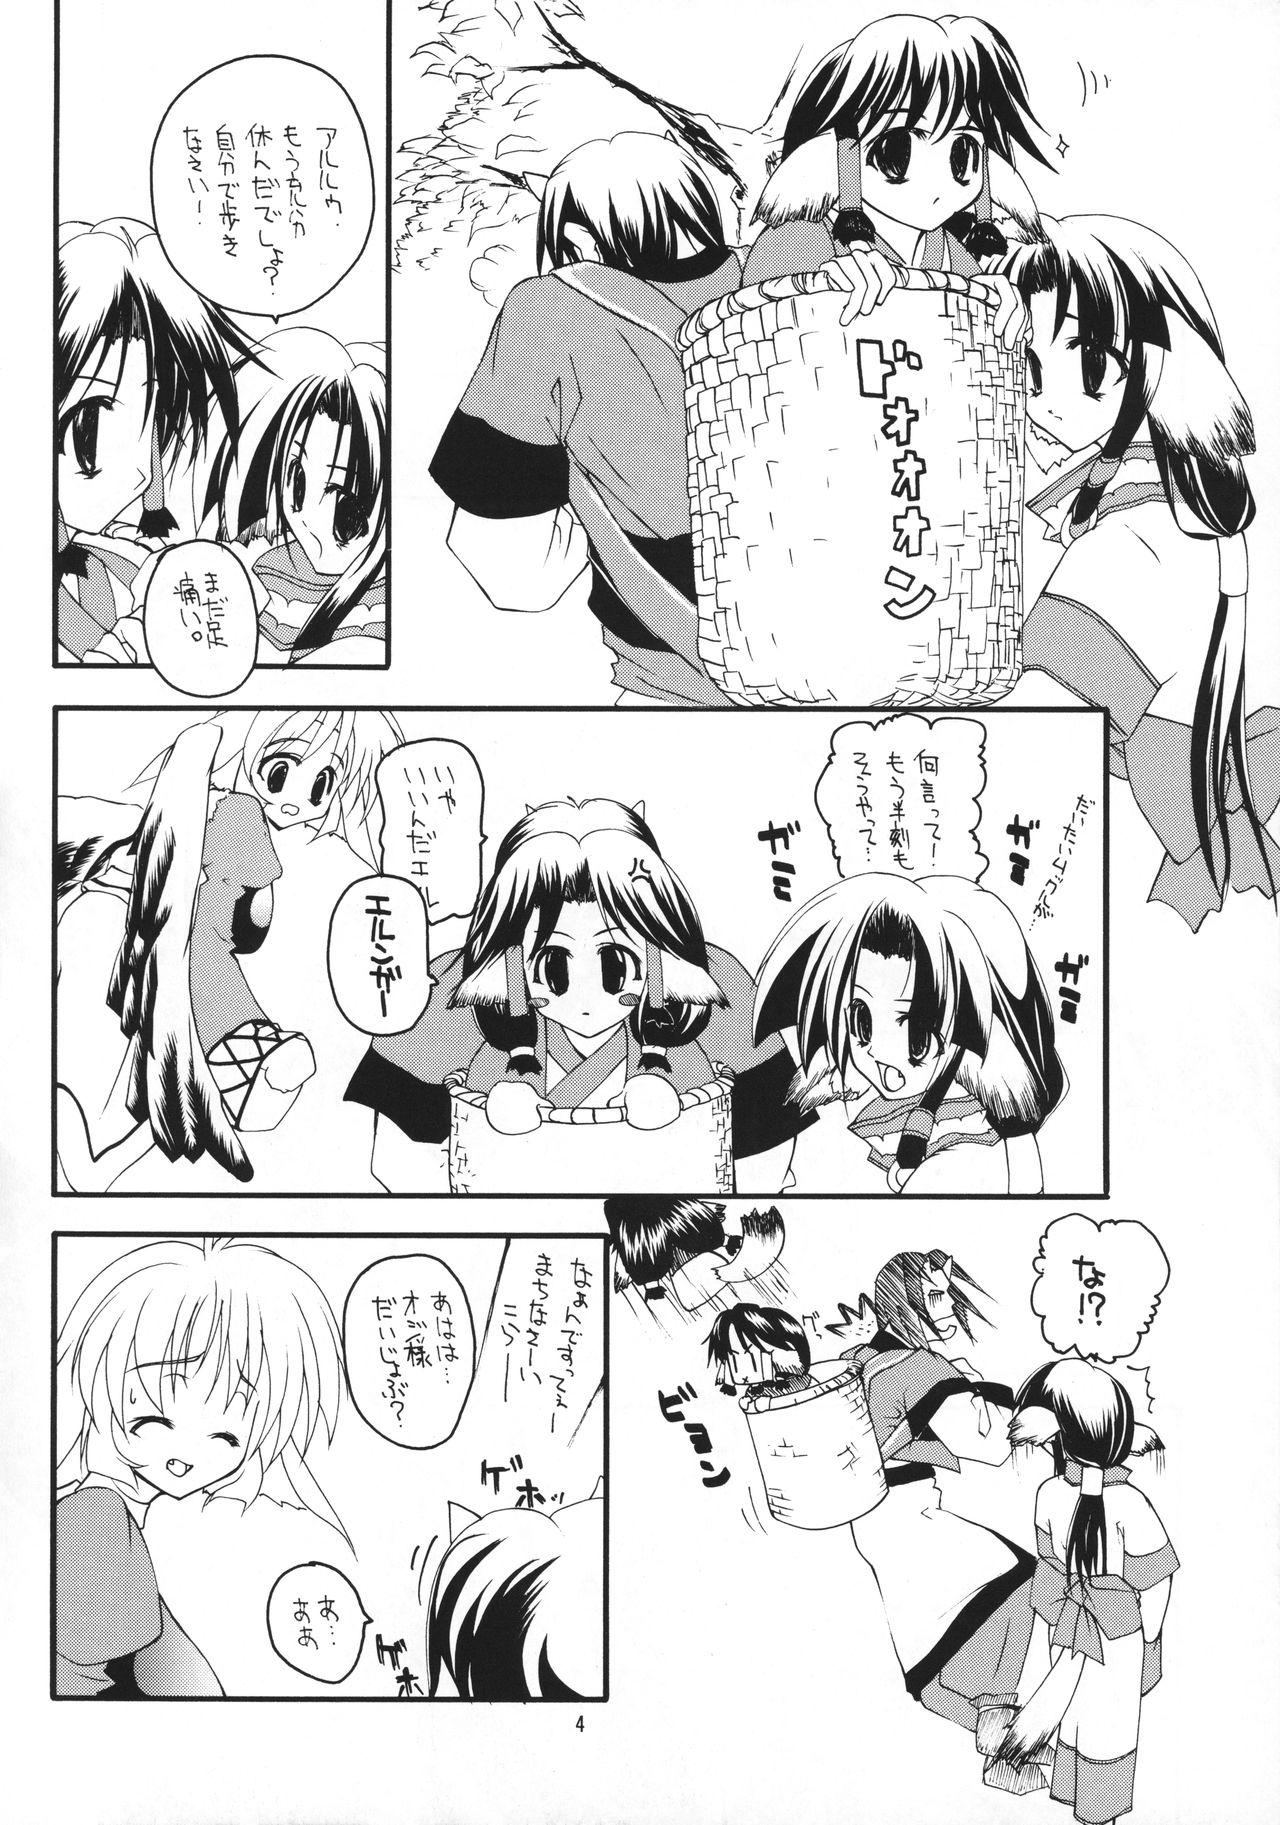 Teenies Musume. - Utawarerumono Casero - Page 3